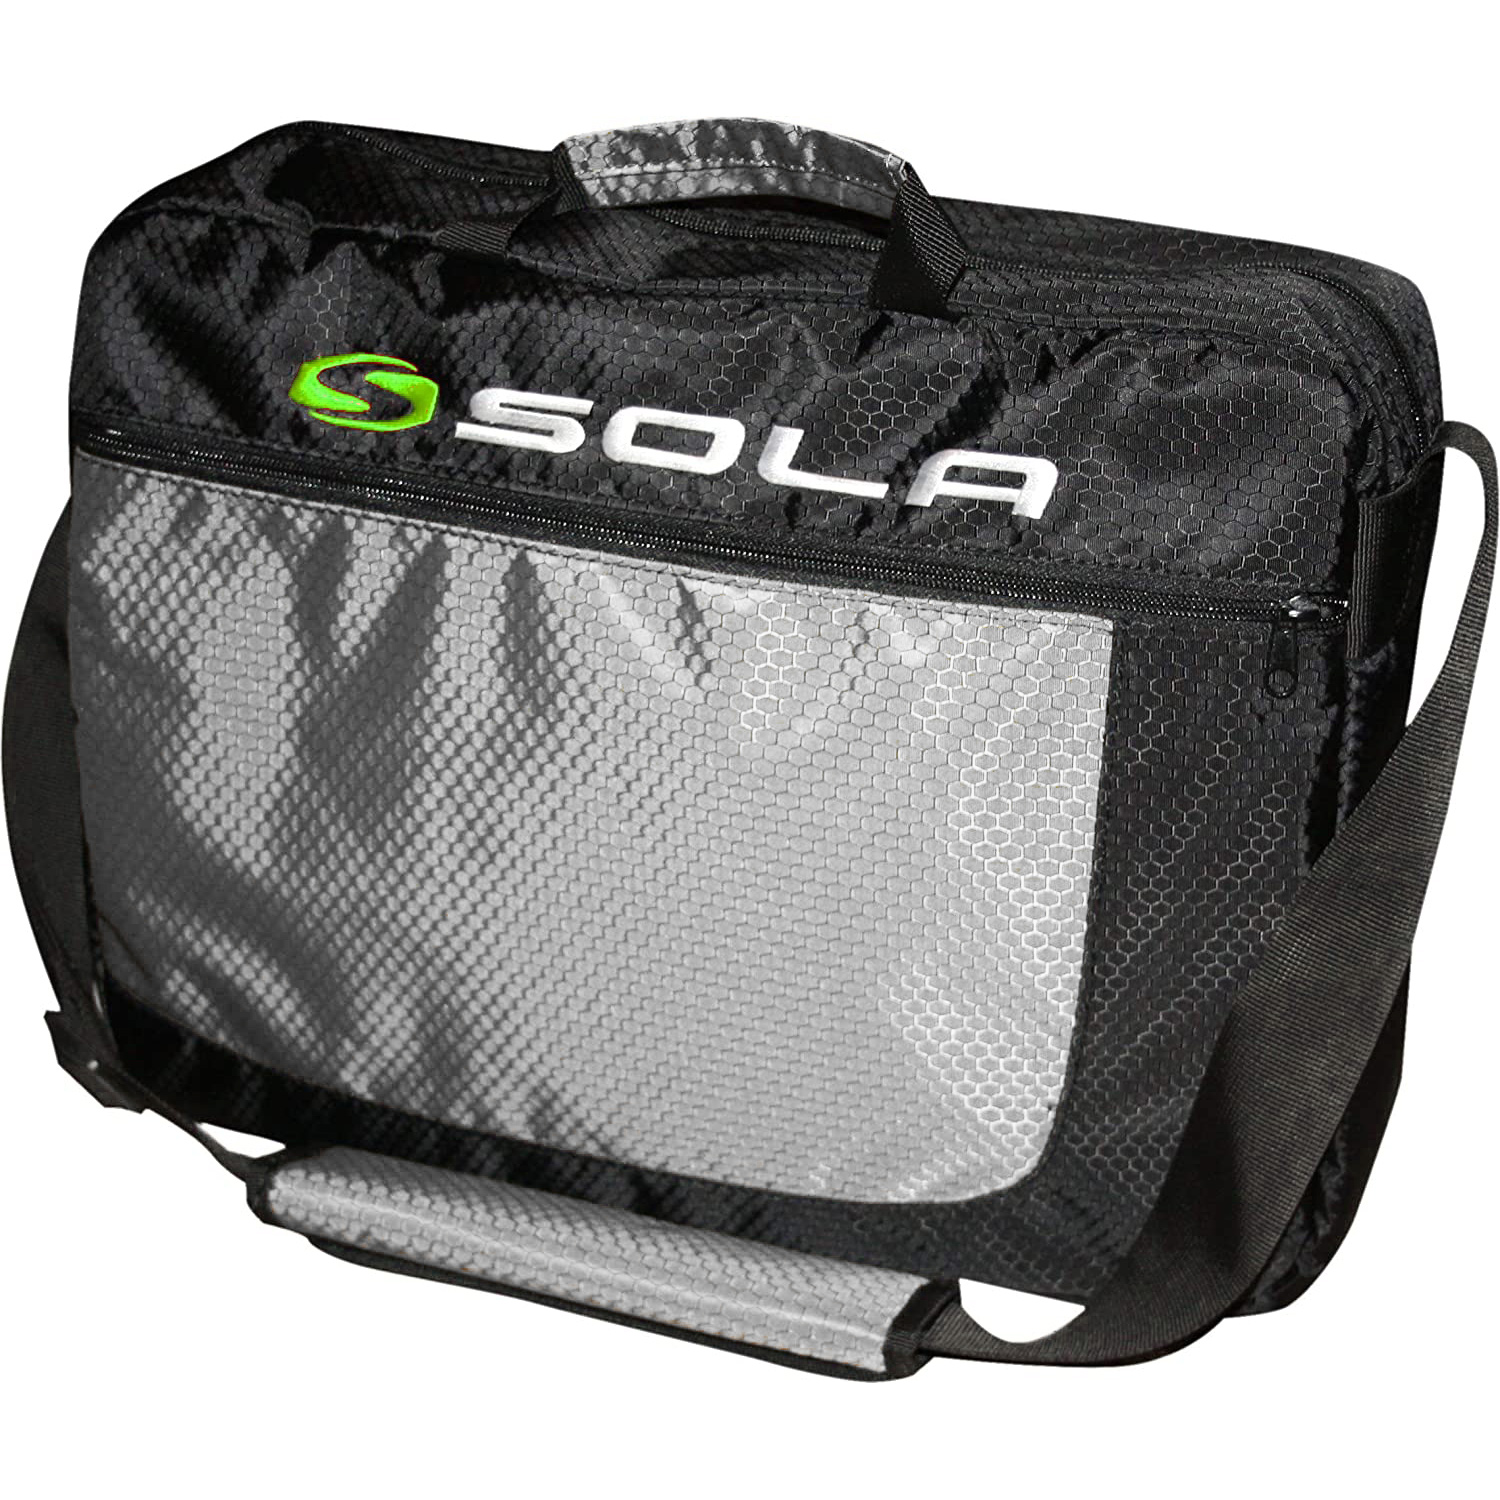 Sola Surf Laptop Shoulder Bag - Black/Silver - Coastwatersports